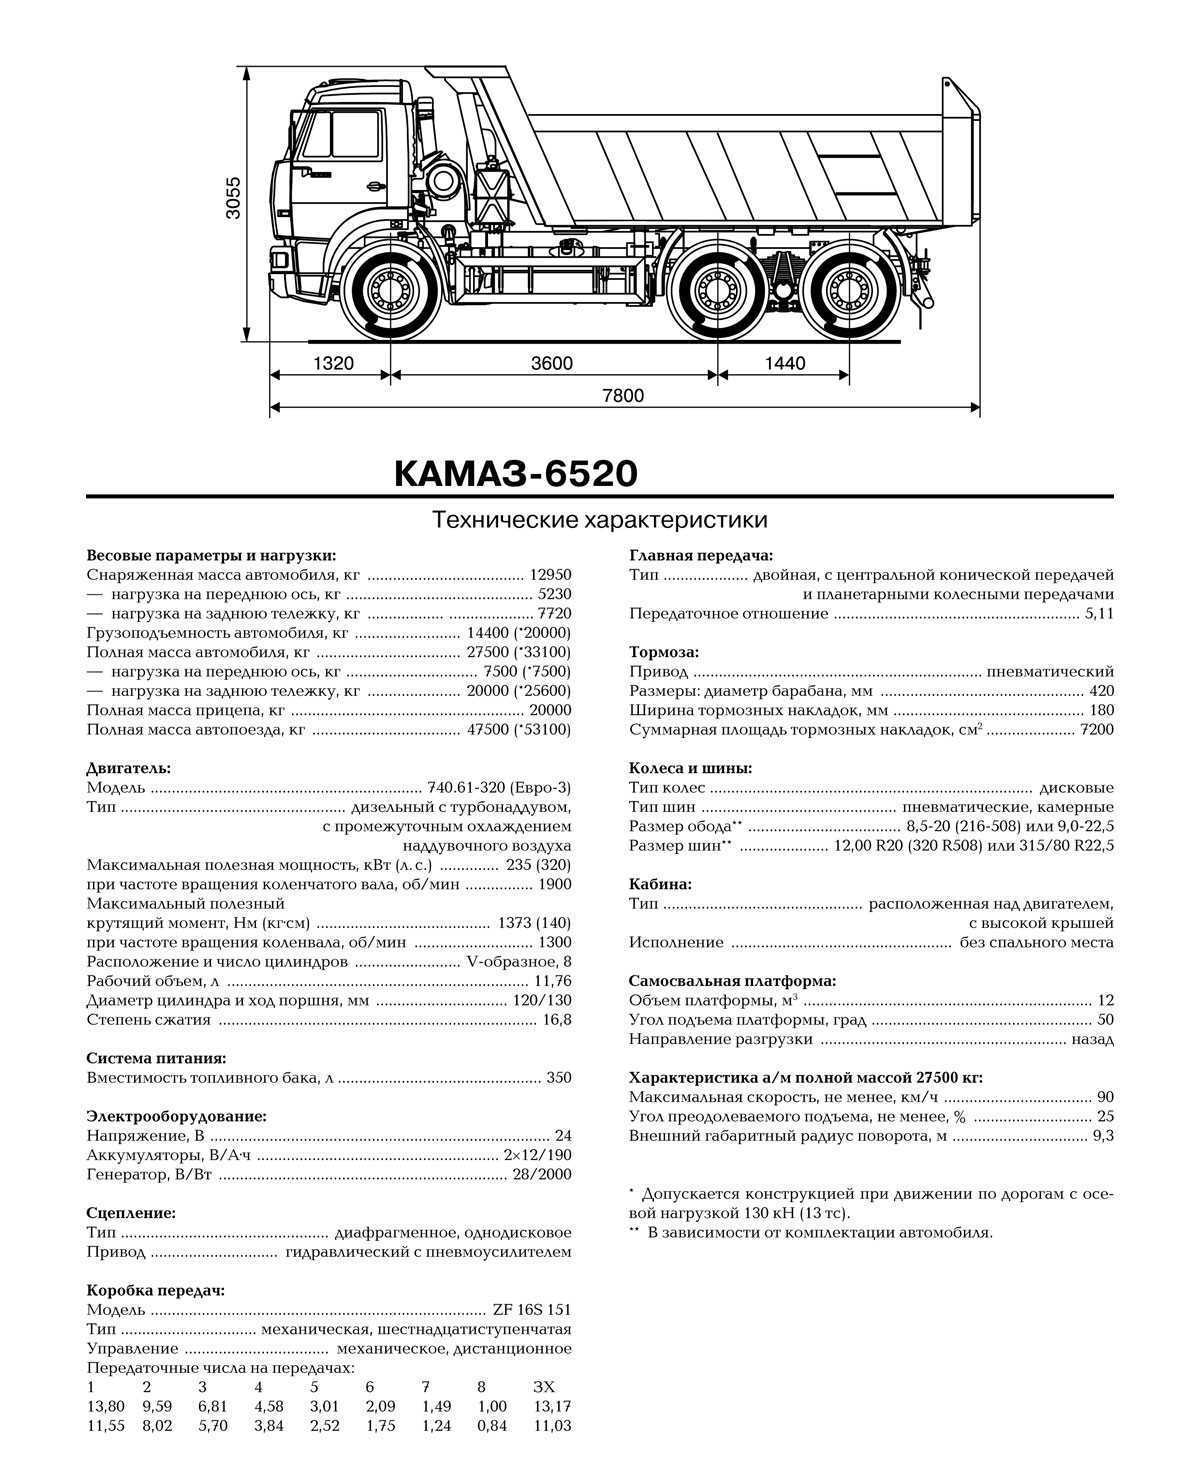 ✅ камаз-6520 самосвал мамонт: как выглядит автосамосвал, грузоподъемность и объем кузова, технические характеристики - tractoramtz.ru